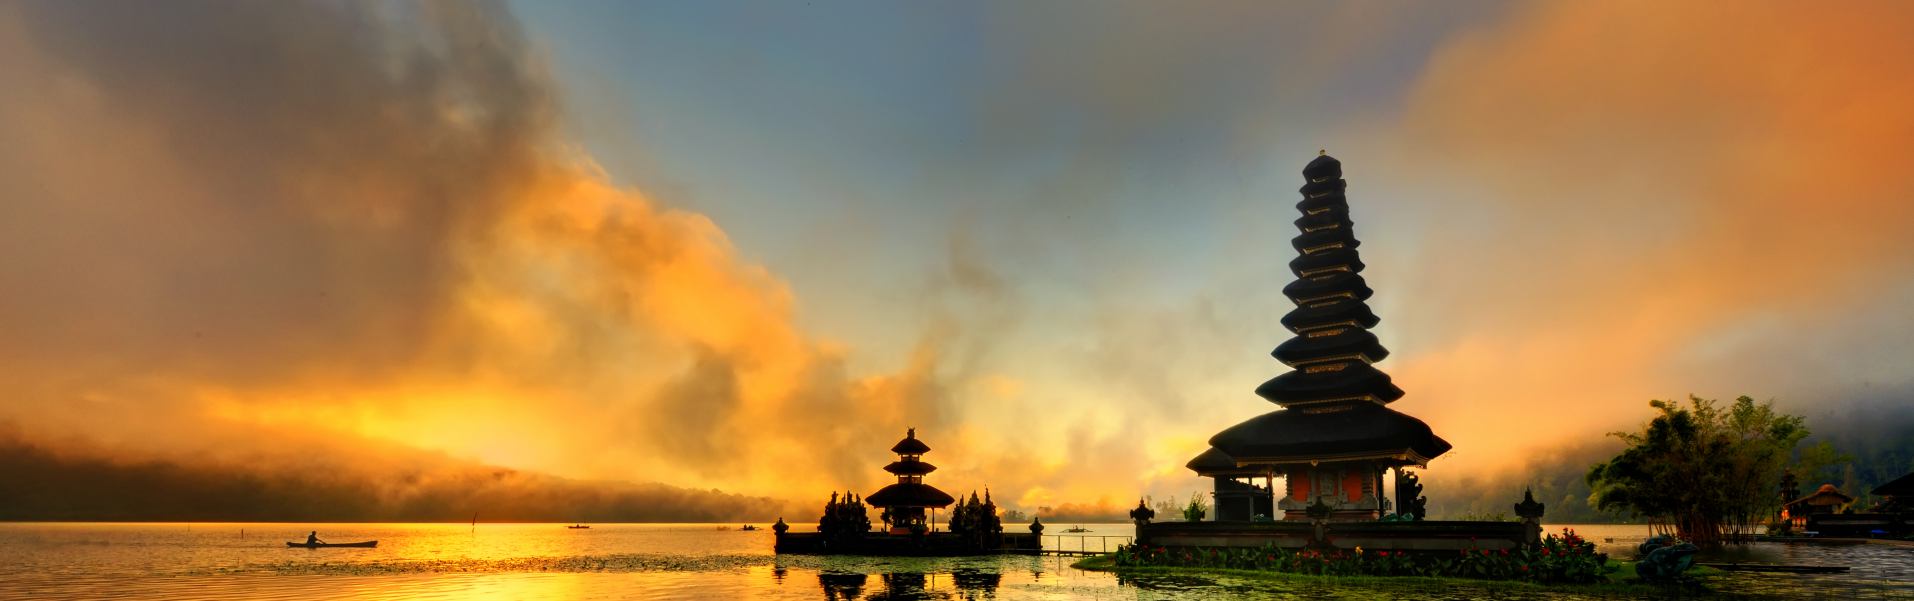 Bali Komodo viajar solo